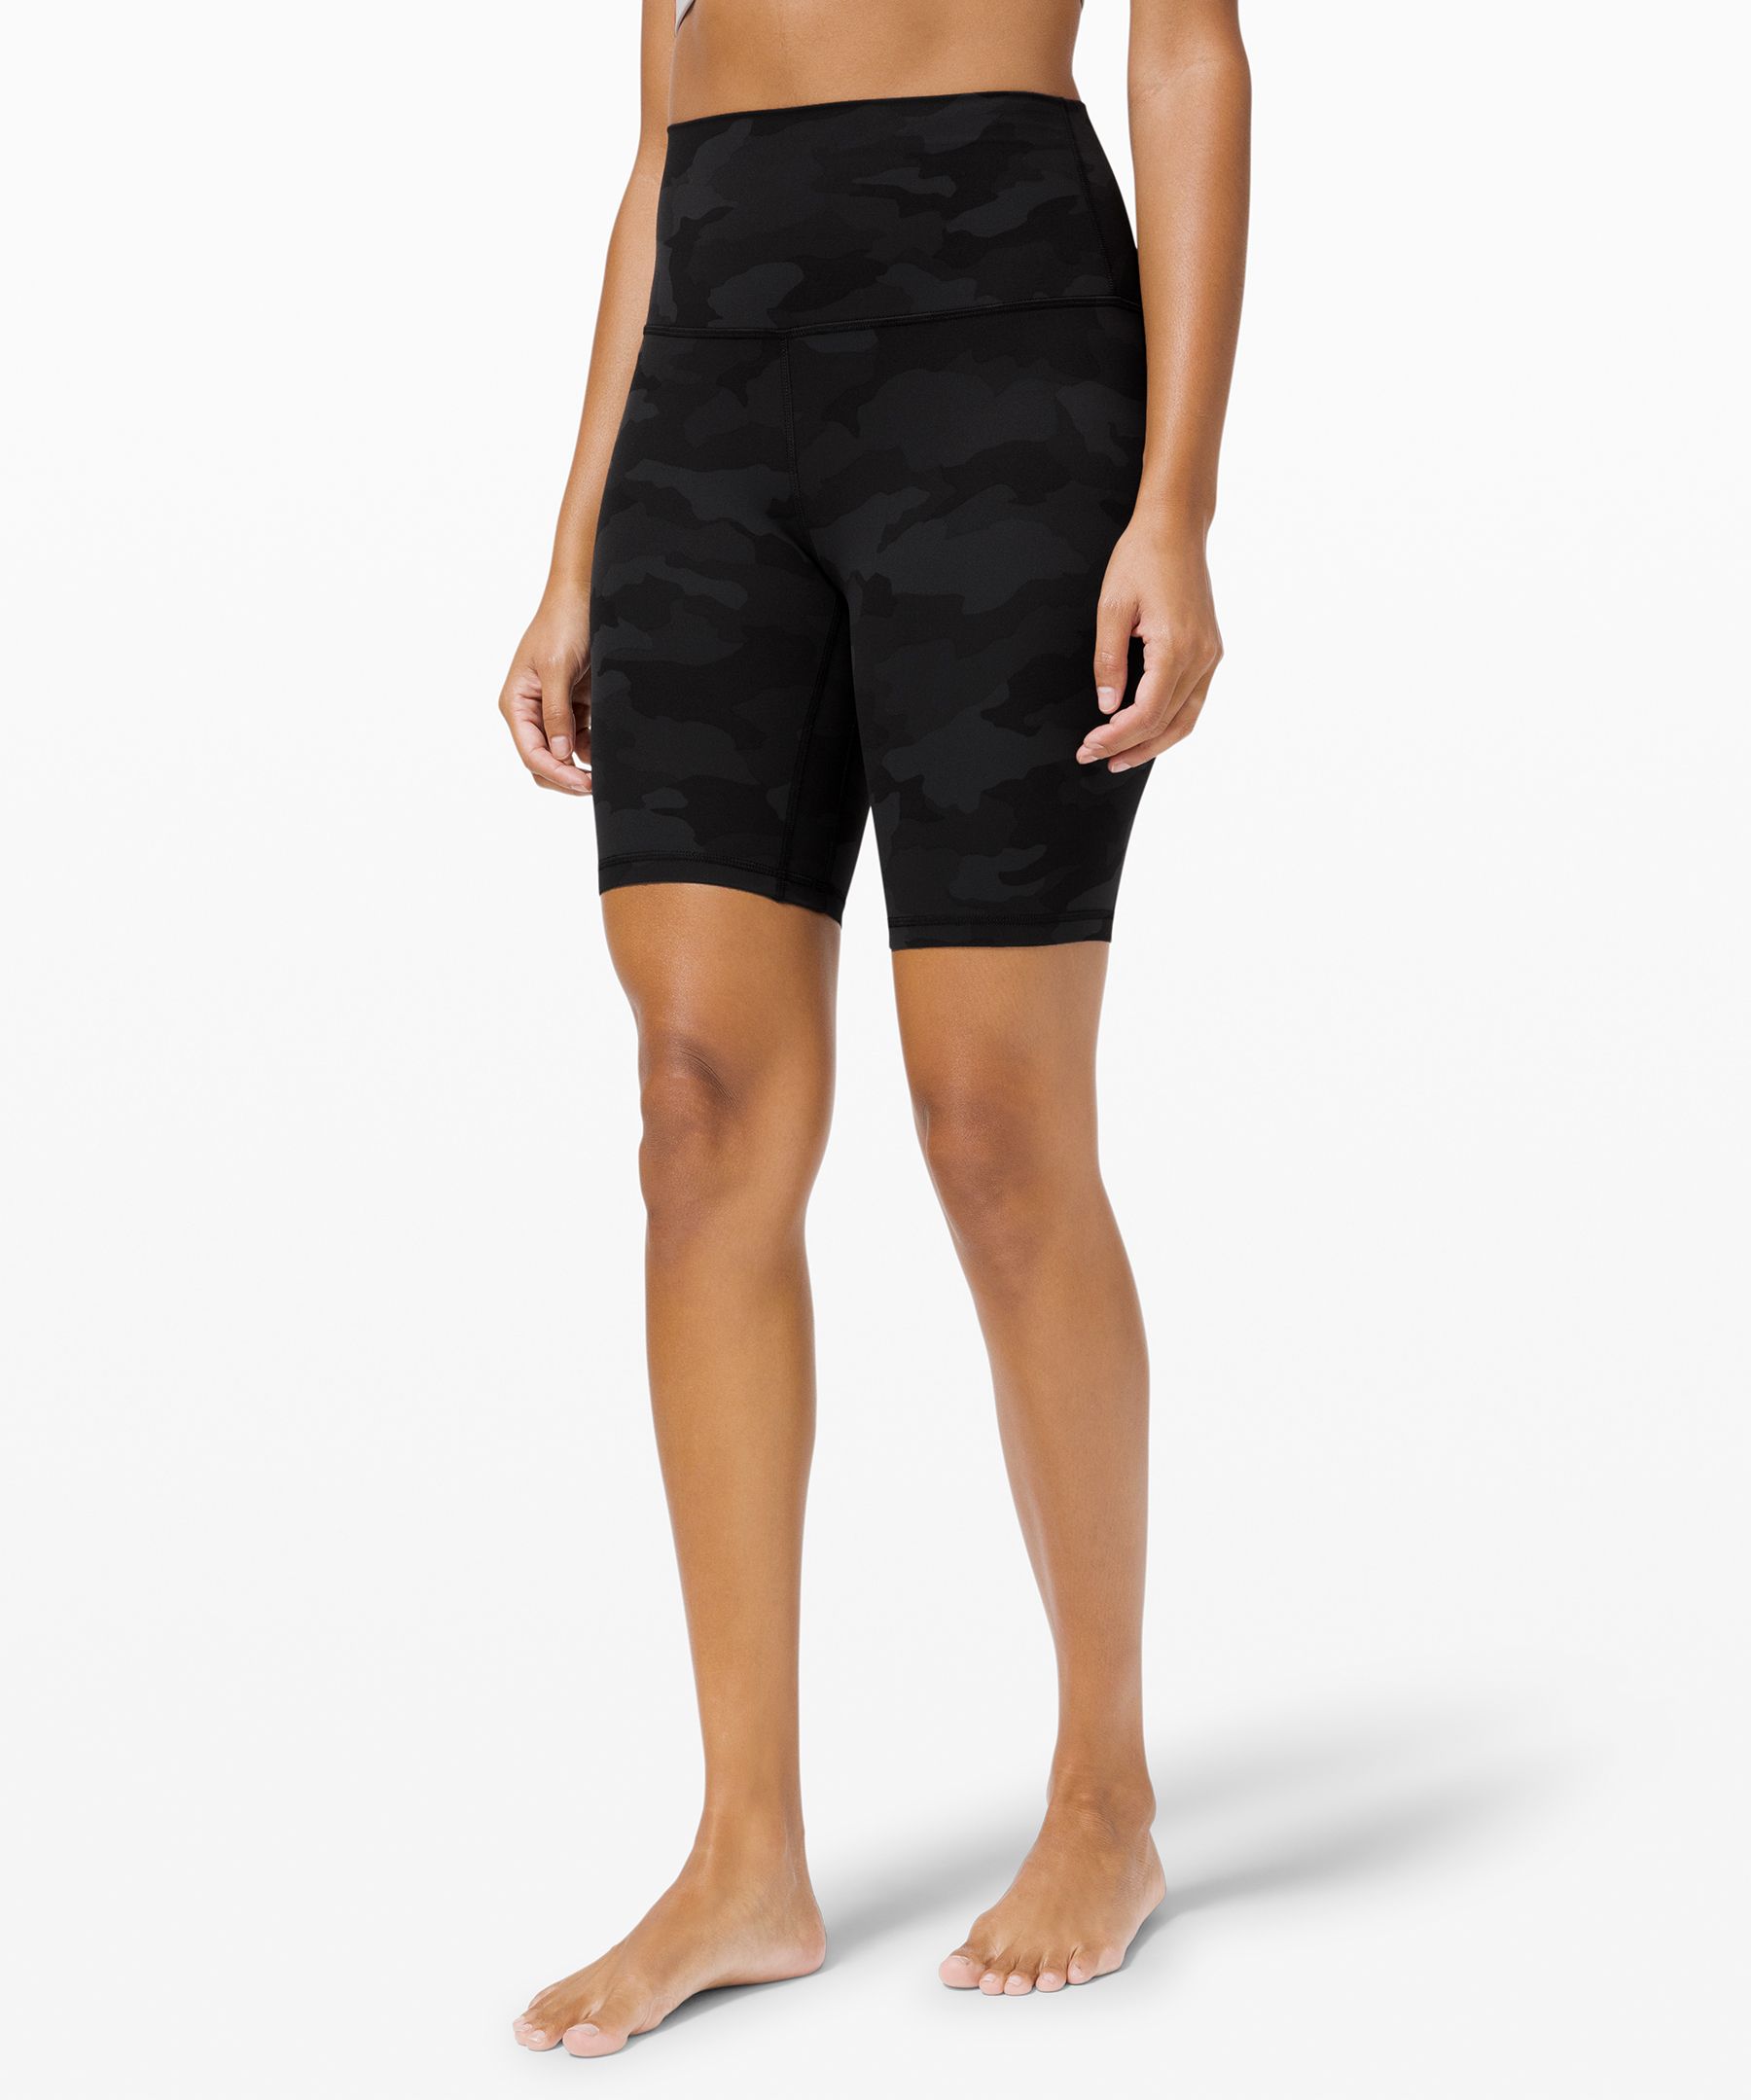 Lululemon Align™ High-rise Shorts 8" In Black